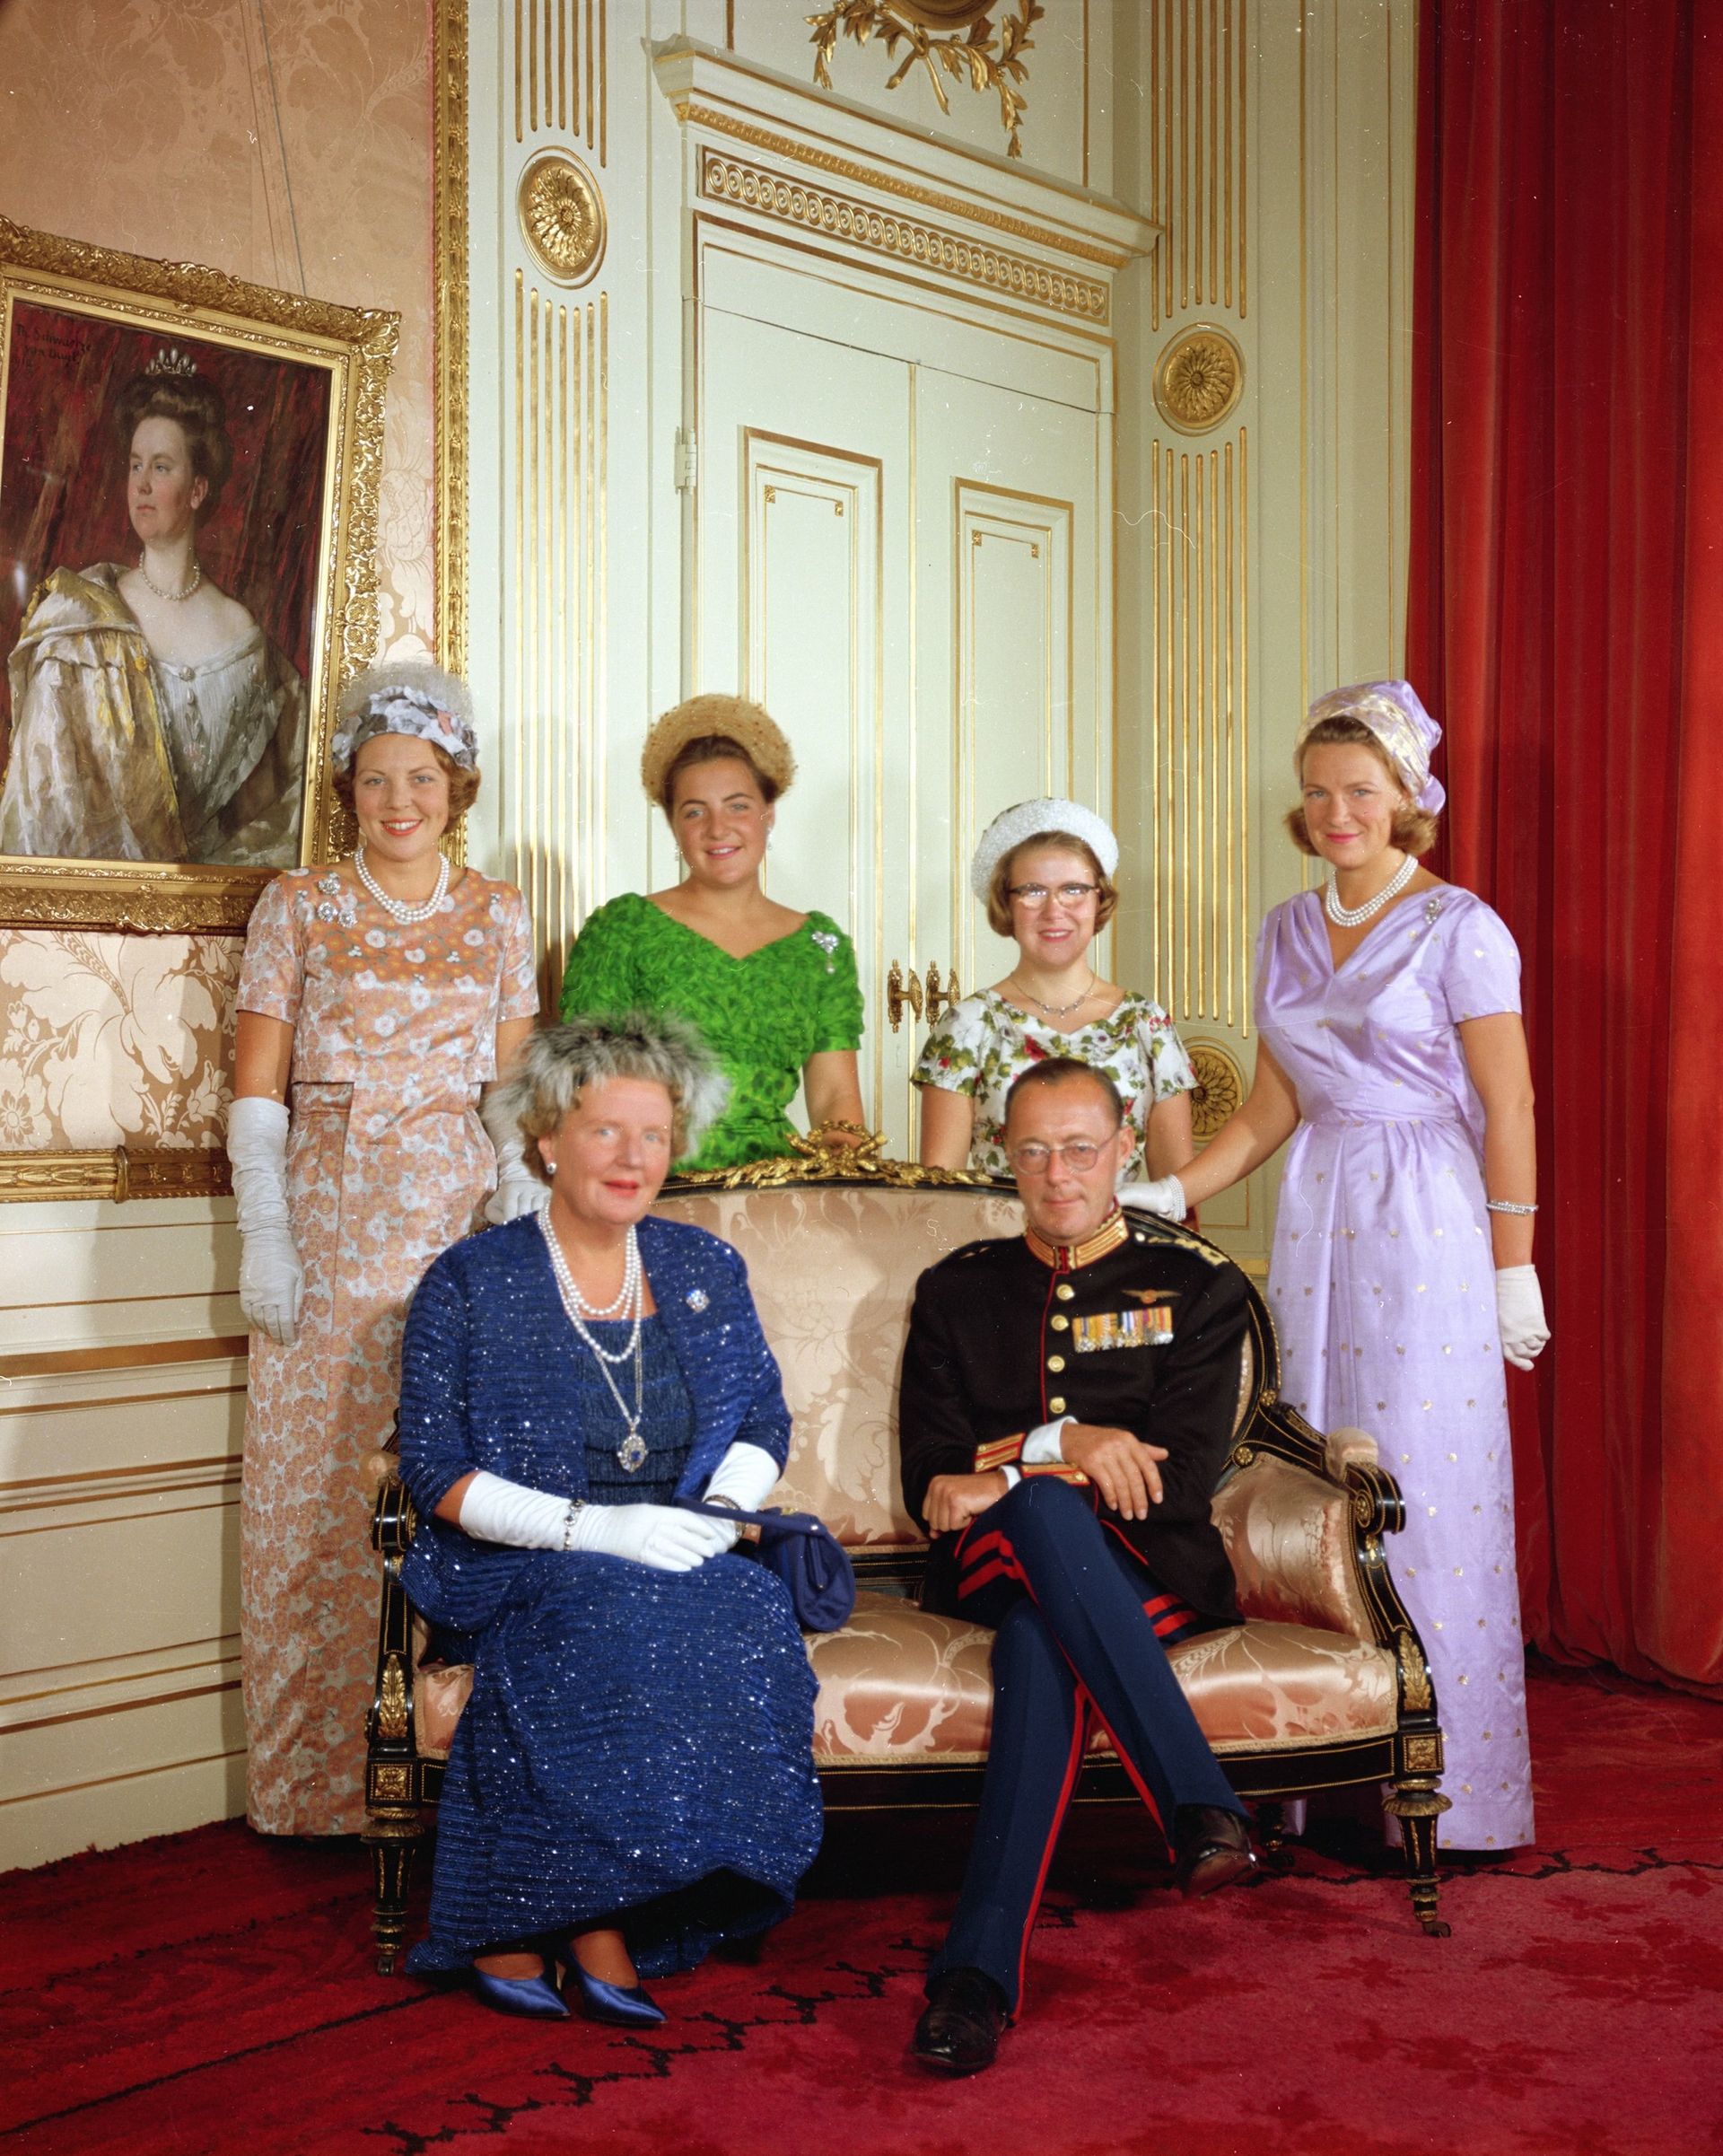 Prinsjesdag 1963: op het bankje zitten koningin Juliana en prins Bernhard. Achter het koningspaar